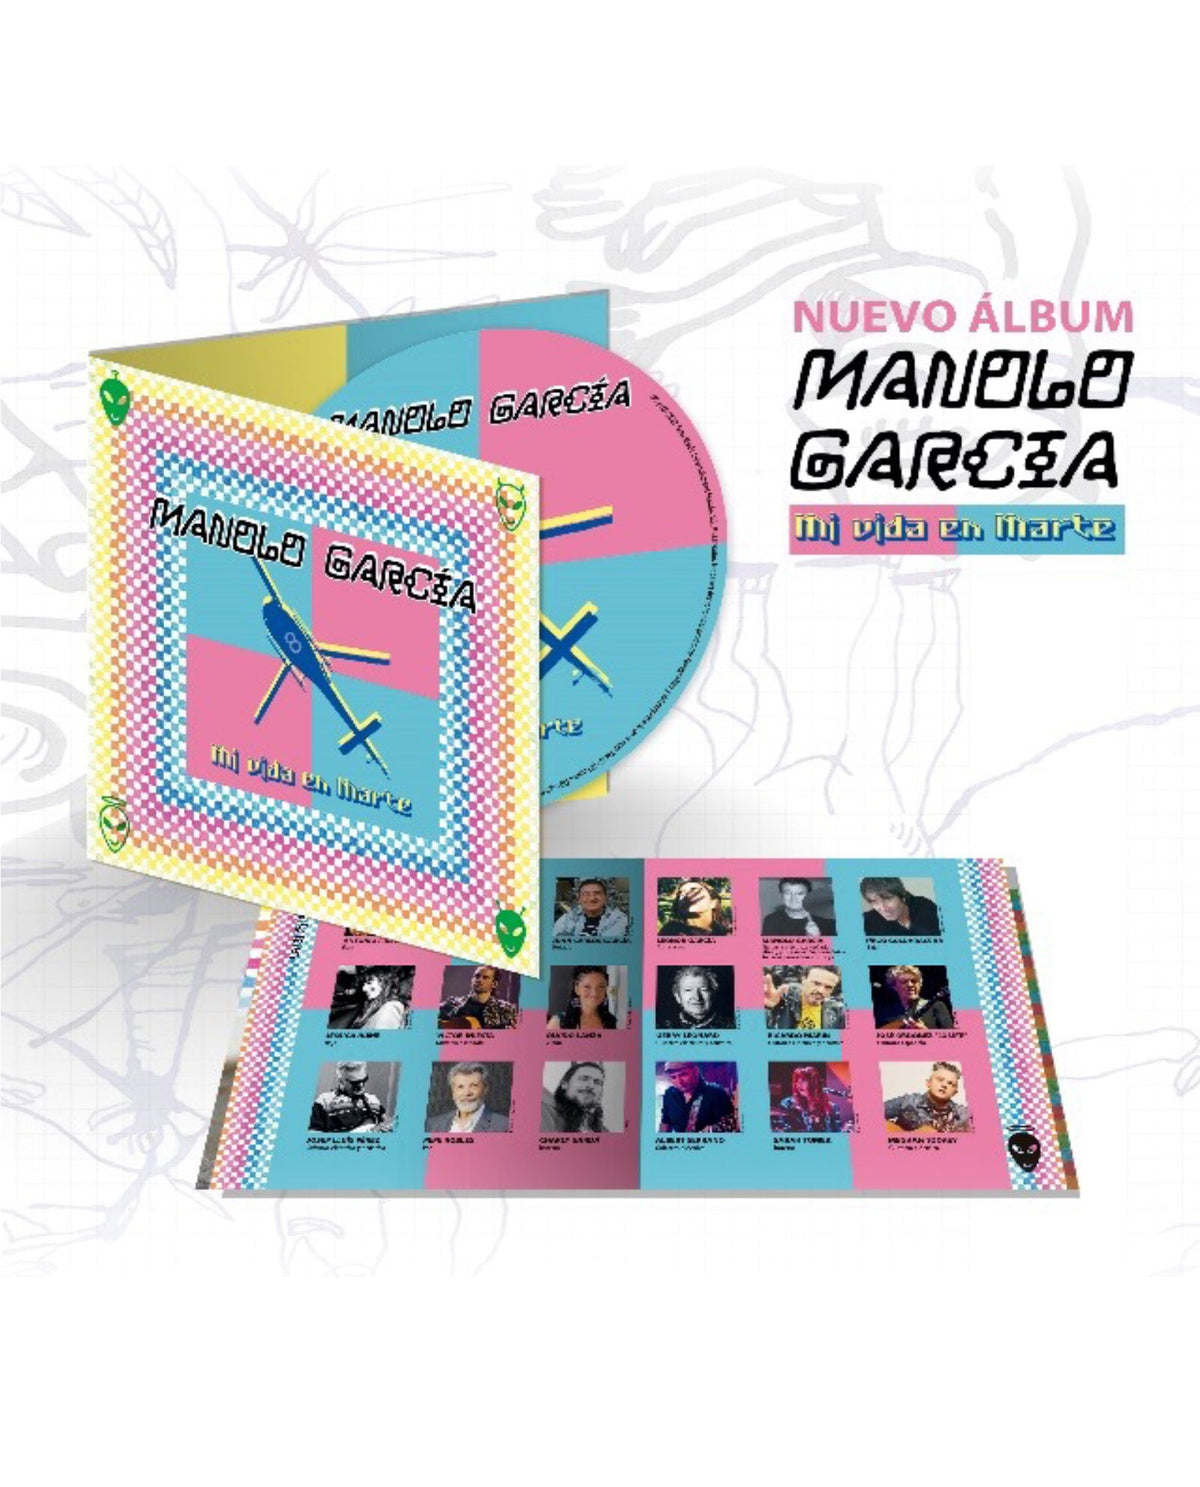 CD Digipack Libreto 20 Páginas MI VIDA EN MARTE - MANOLO GARCÍA - Rocktud - Rocktud